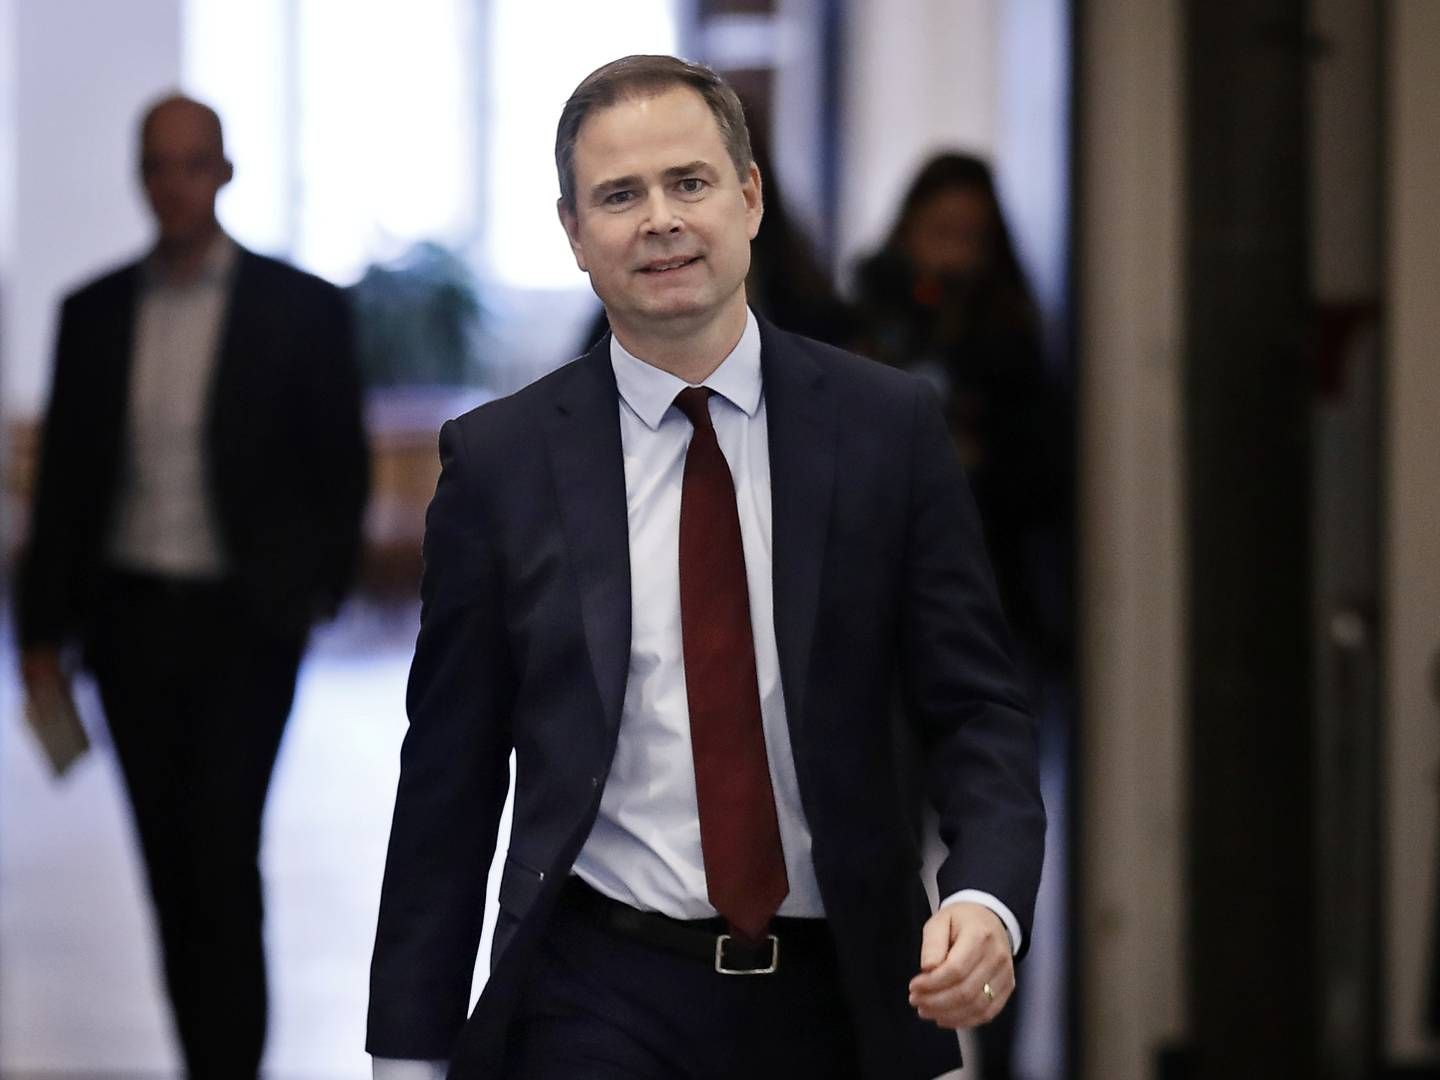 Finansminister Nicolai Wammen (S) er blevet enig med en række partier om en stimulipakke. | Foto: Jens Dresling/Ritzau Scanpix